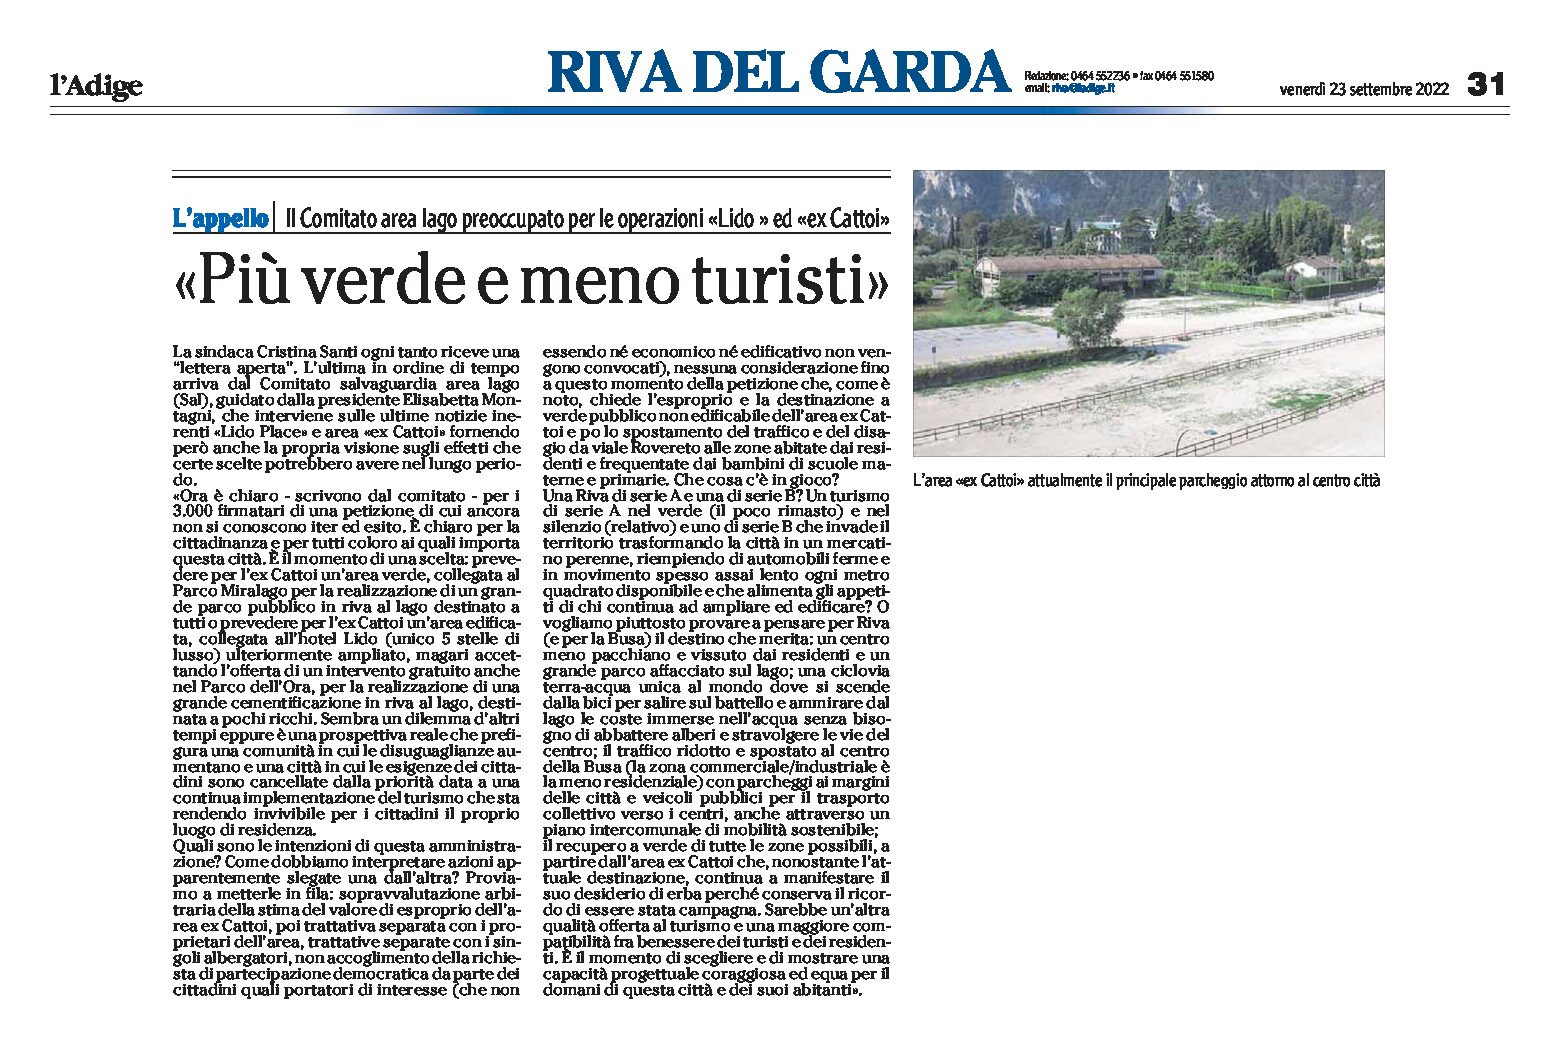 Riva: petizione del Comitato Sal “più verde e meno turisti”